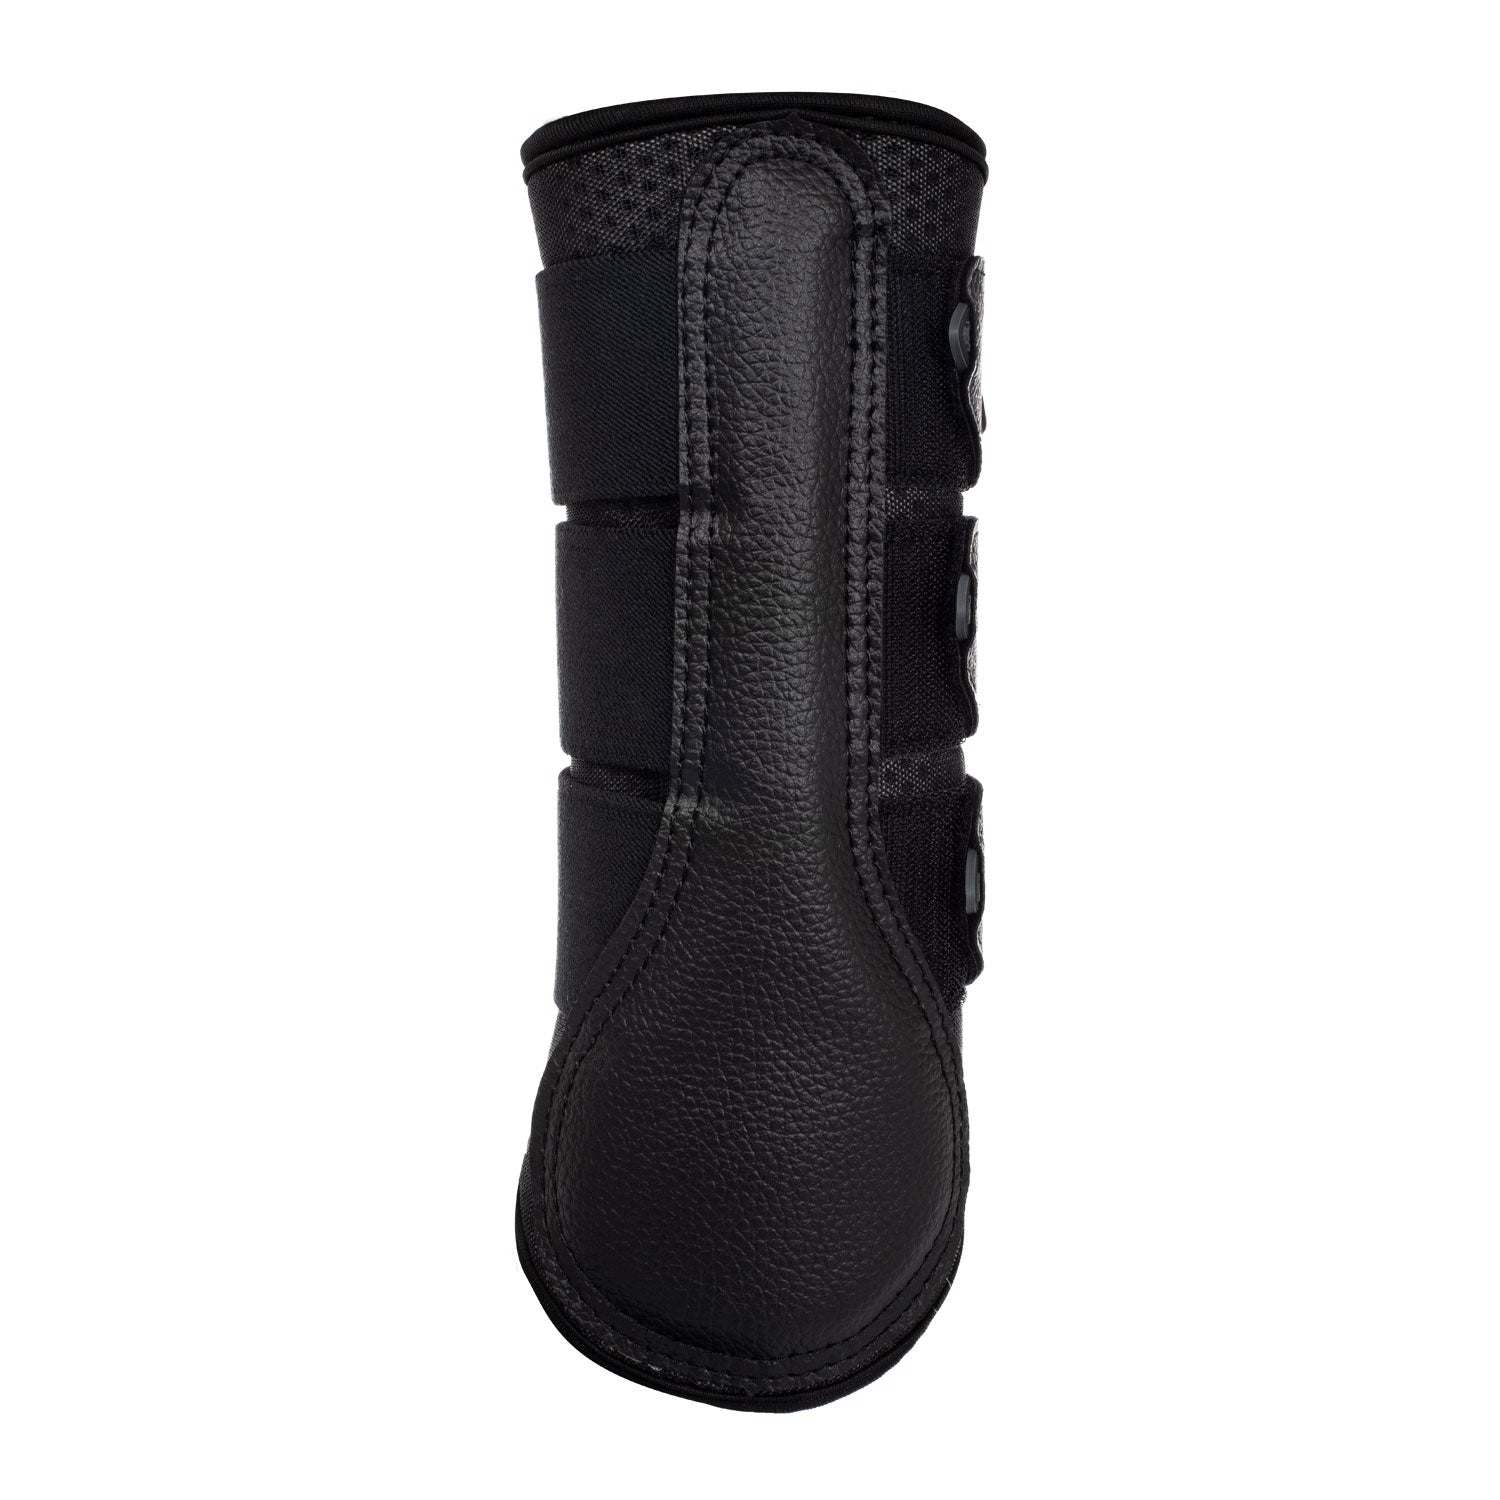 Gamaschen Perforated neoprene rear boots triple Velcro fastening - Reitstiefel Kandel - Dein Reitshop